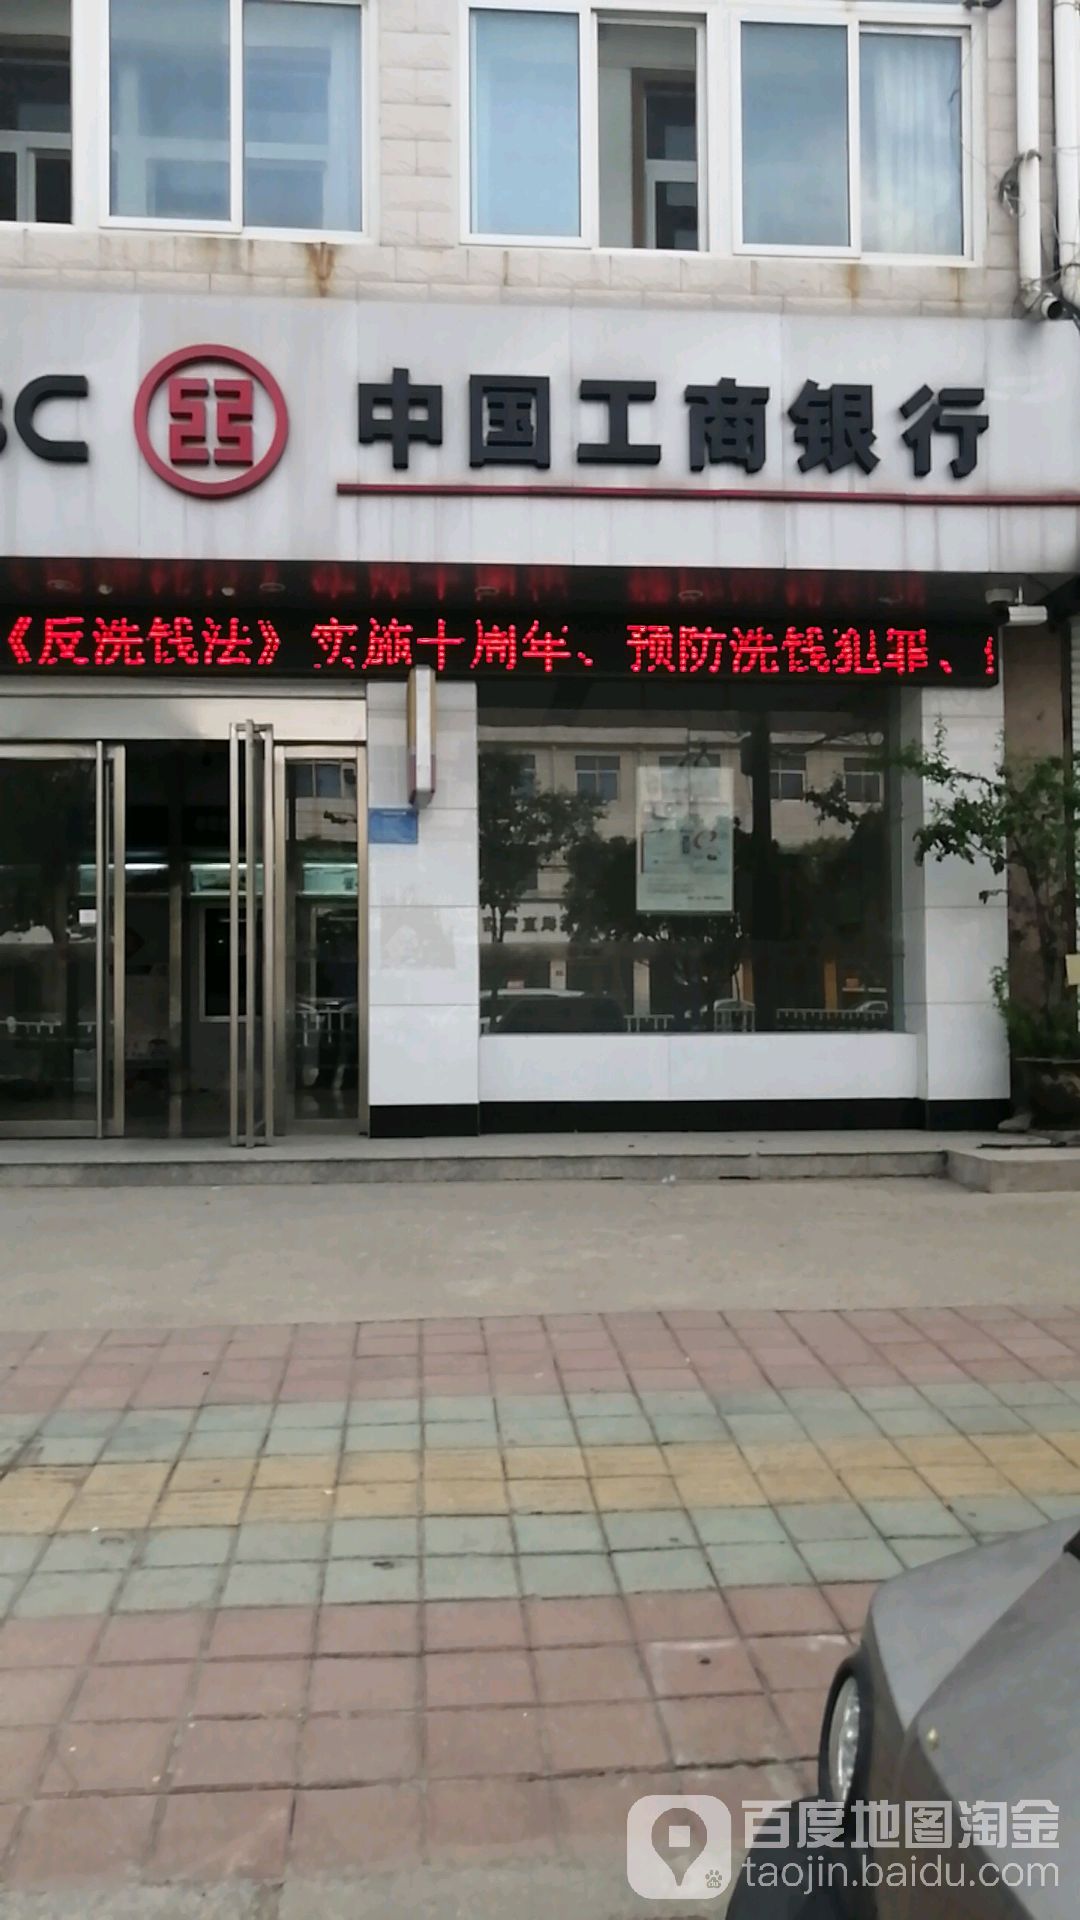 中国工商银行24小时自助银行(中山南路店)